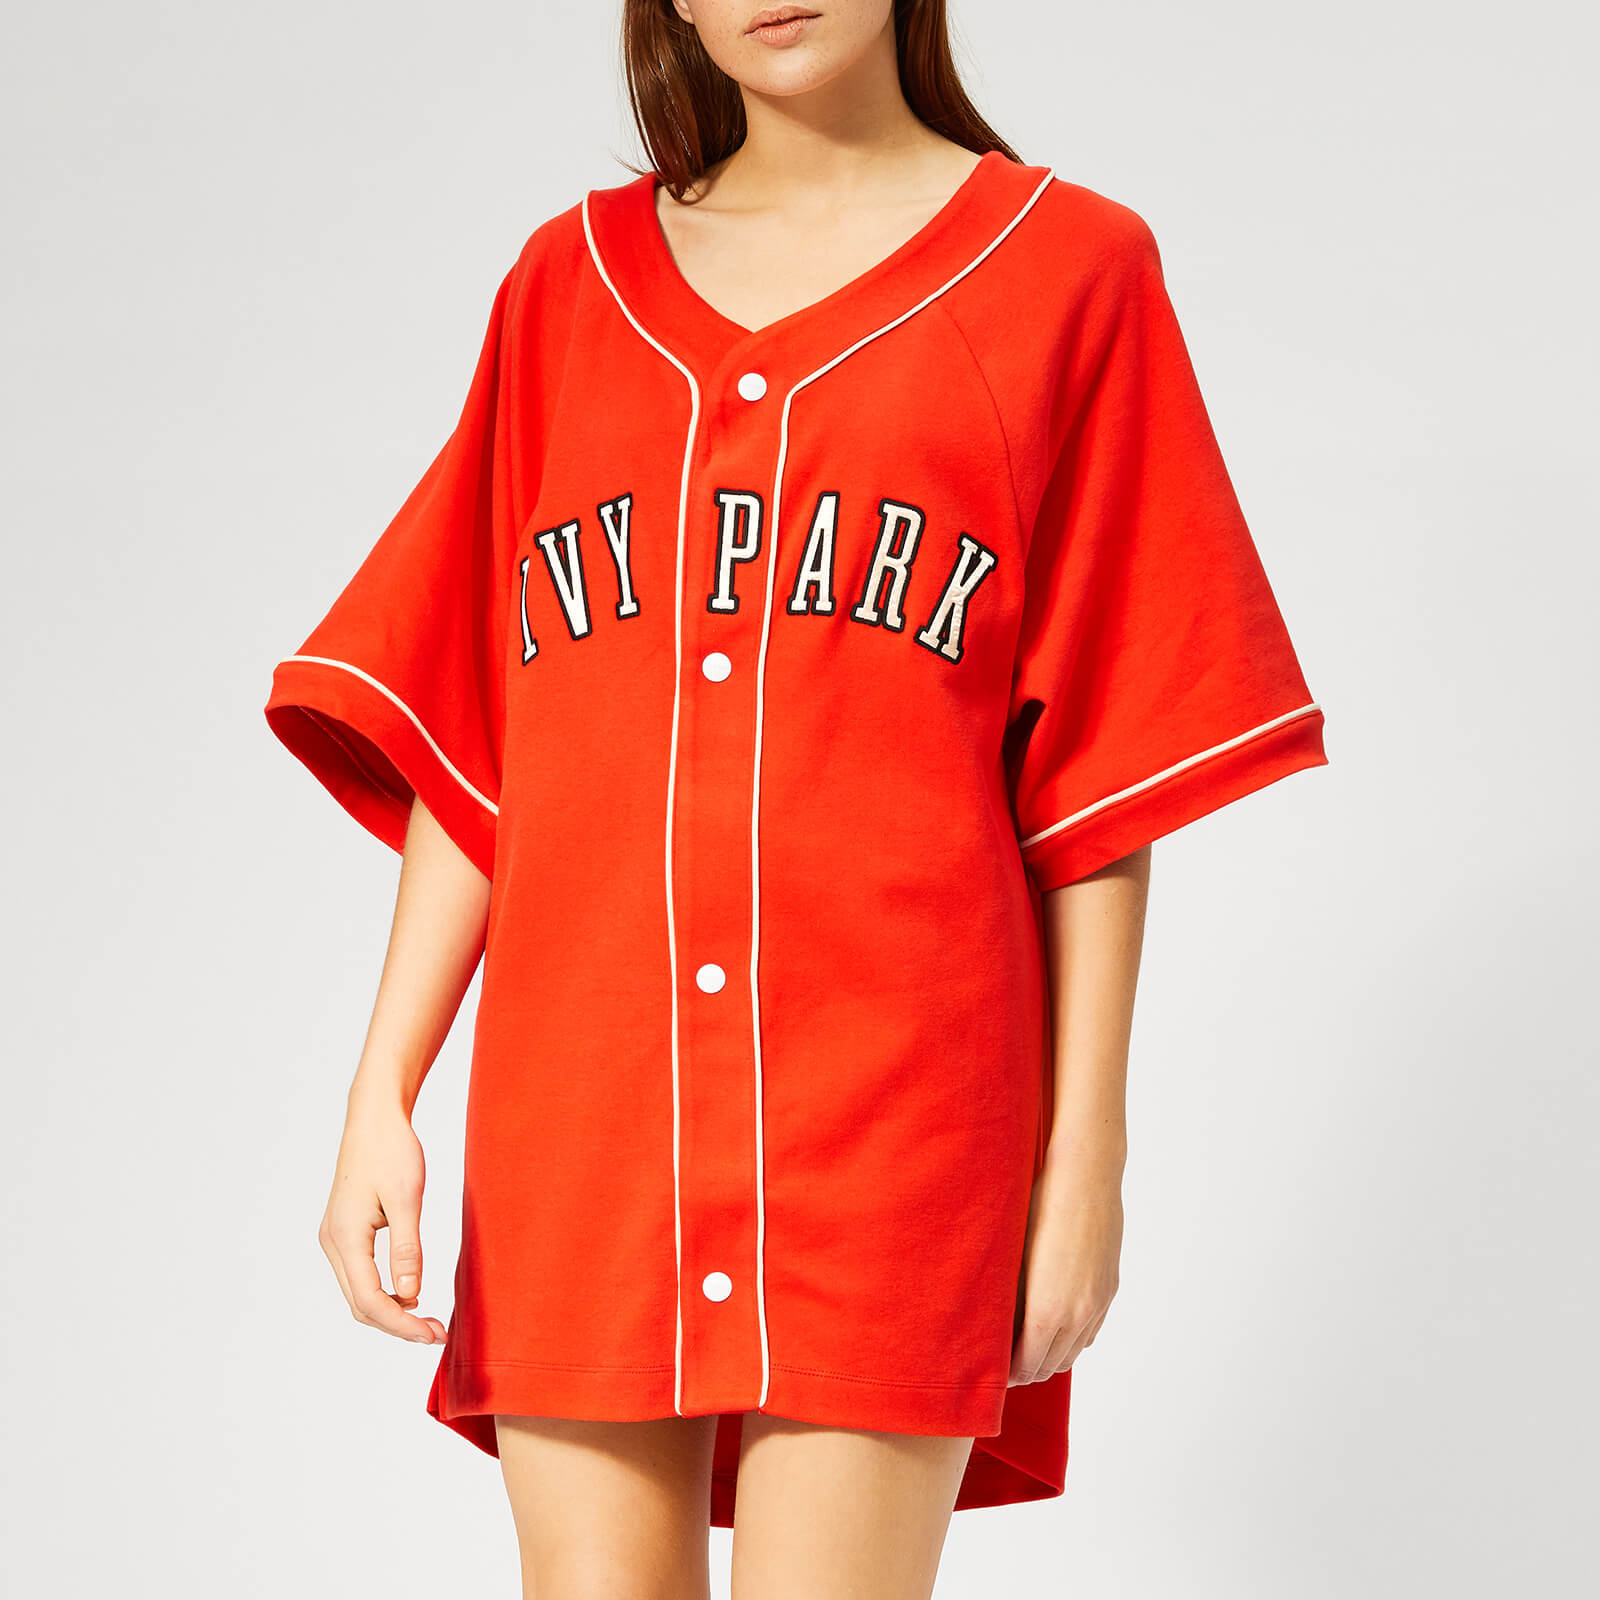 red baseball jersey womens